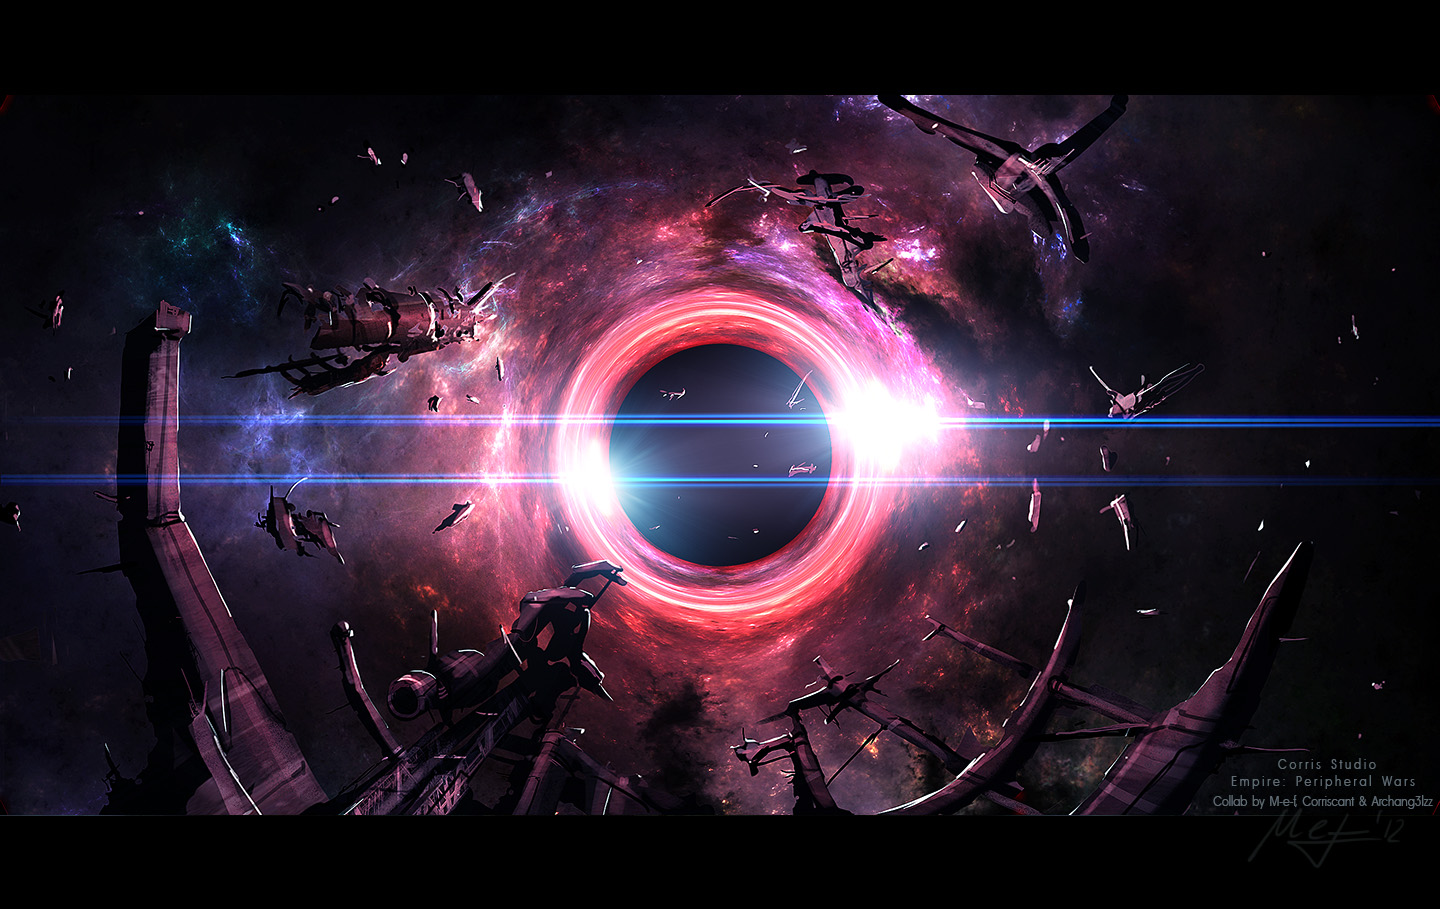 Sci Fi Black Hole Art by ArtistMEF